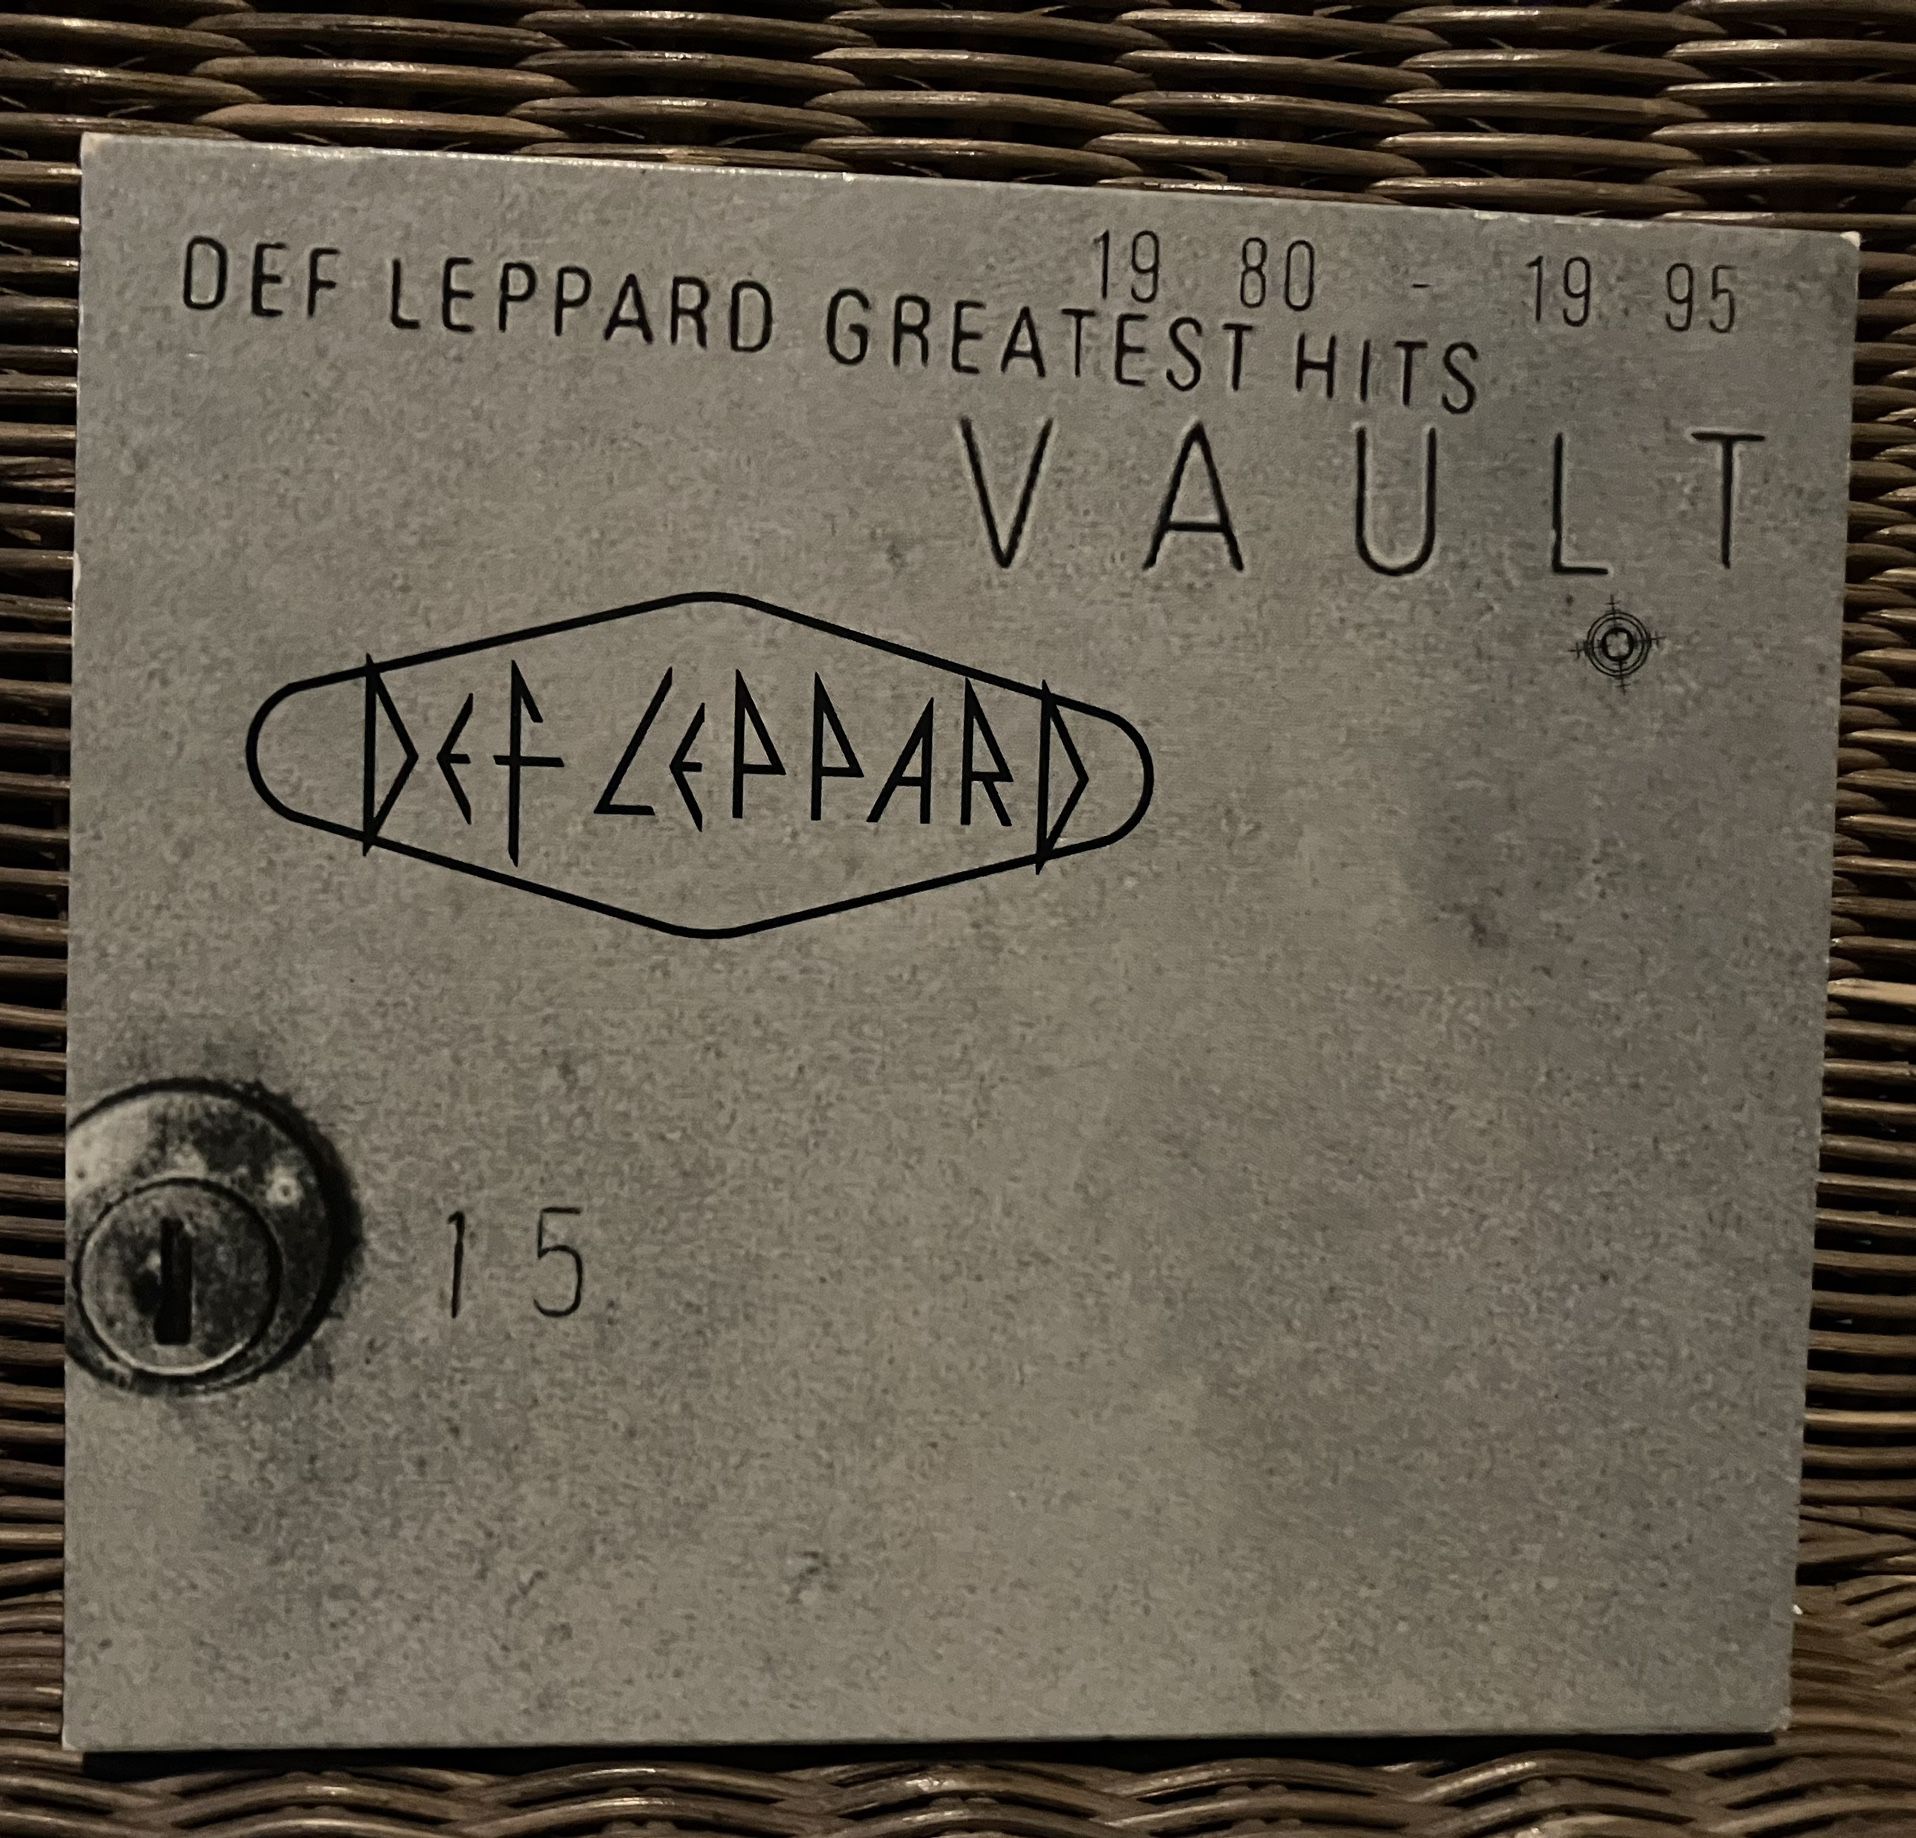 Def Leppard CD